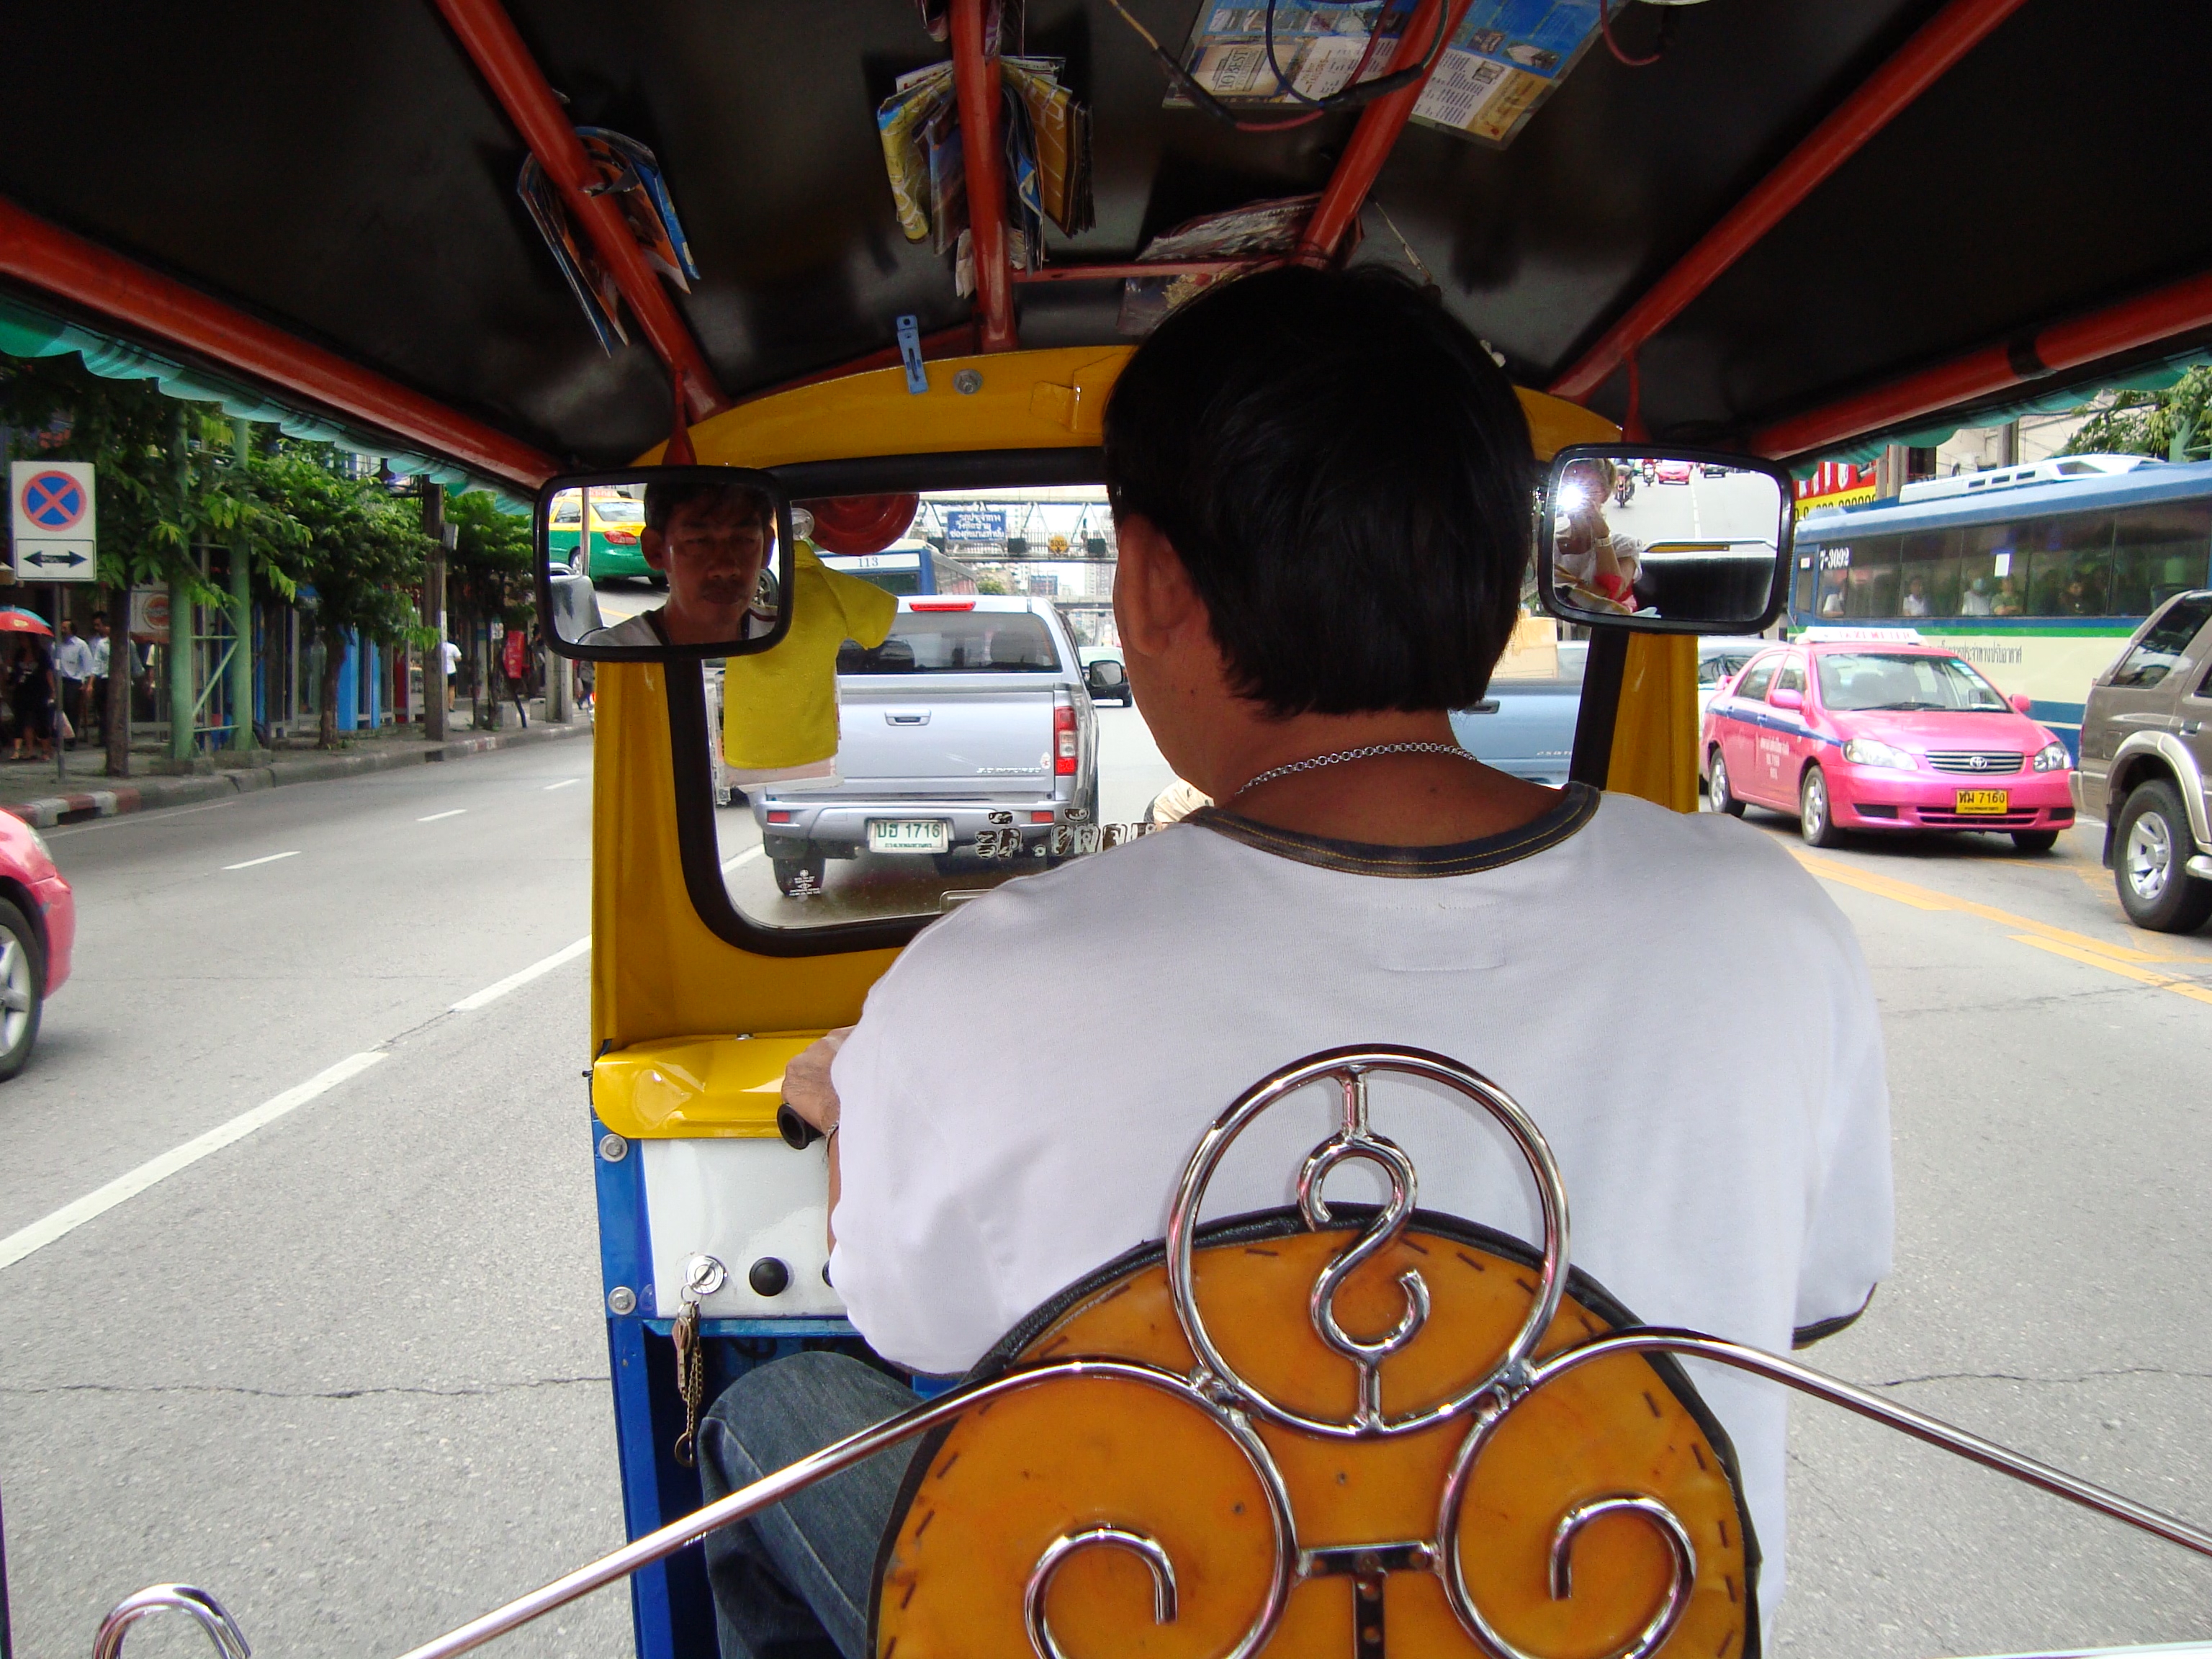 Tuk tuk ride in Bangkok